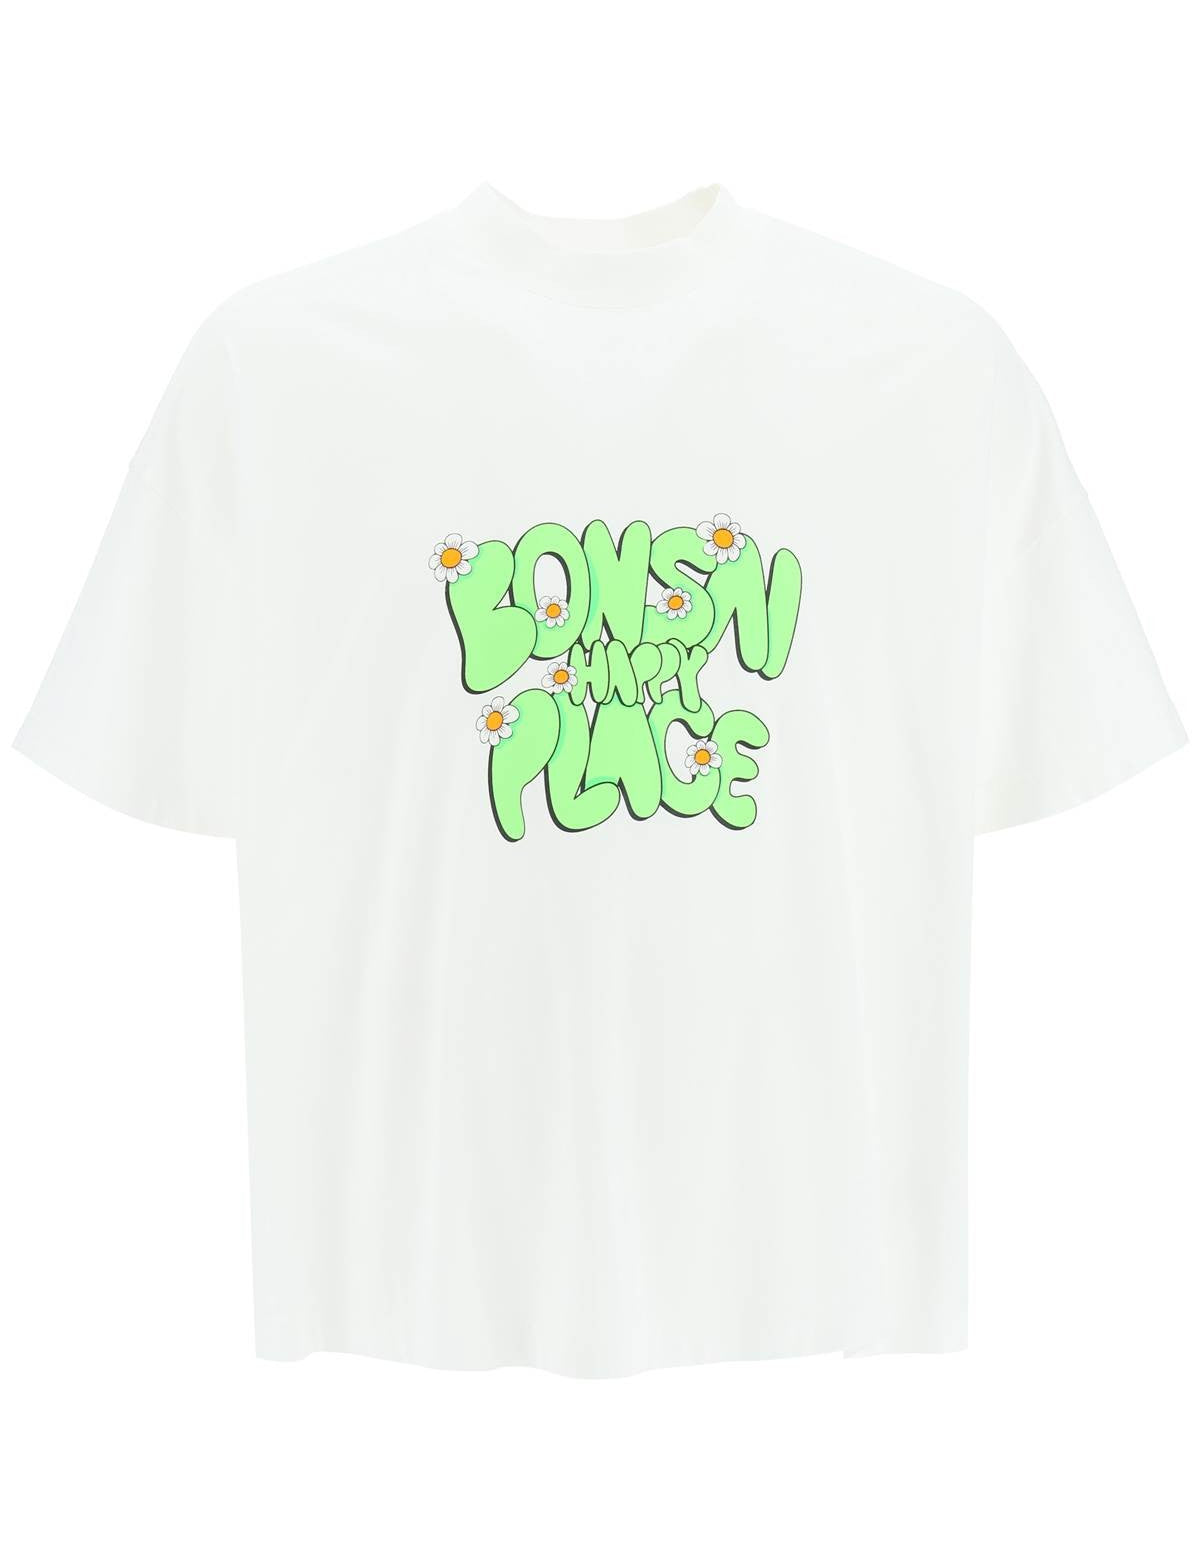 bonsai-printed-maxi-t-shirt.jpg